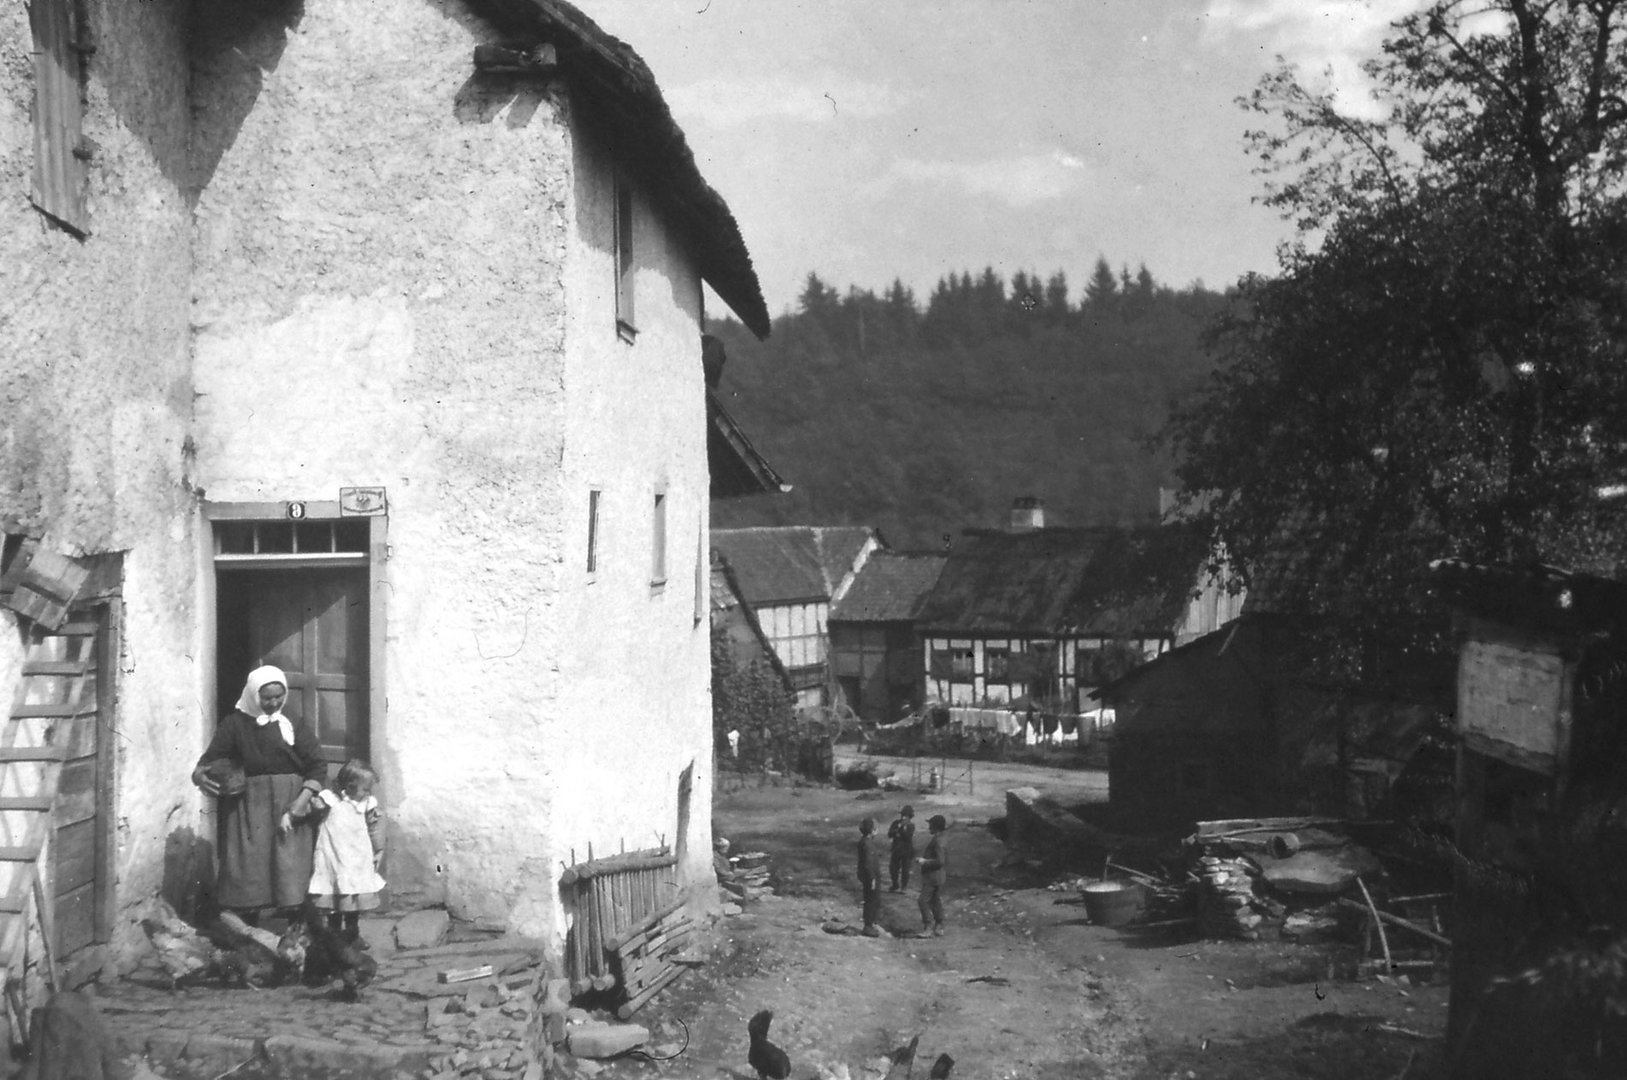 Aus dem Fotoalbum "Antweiler 1906"